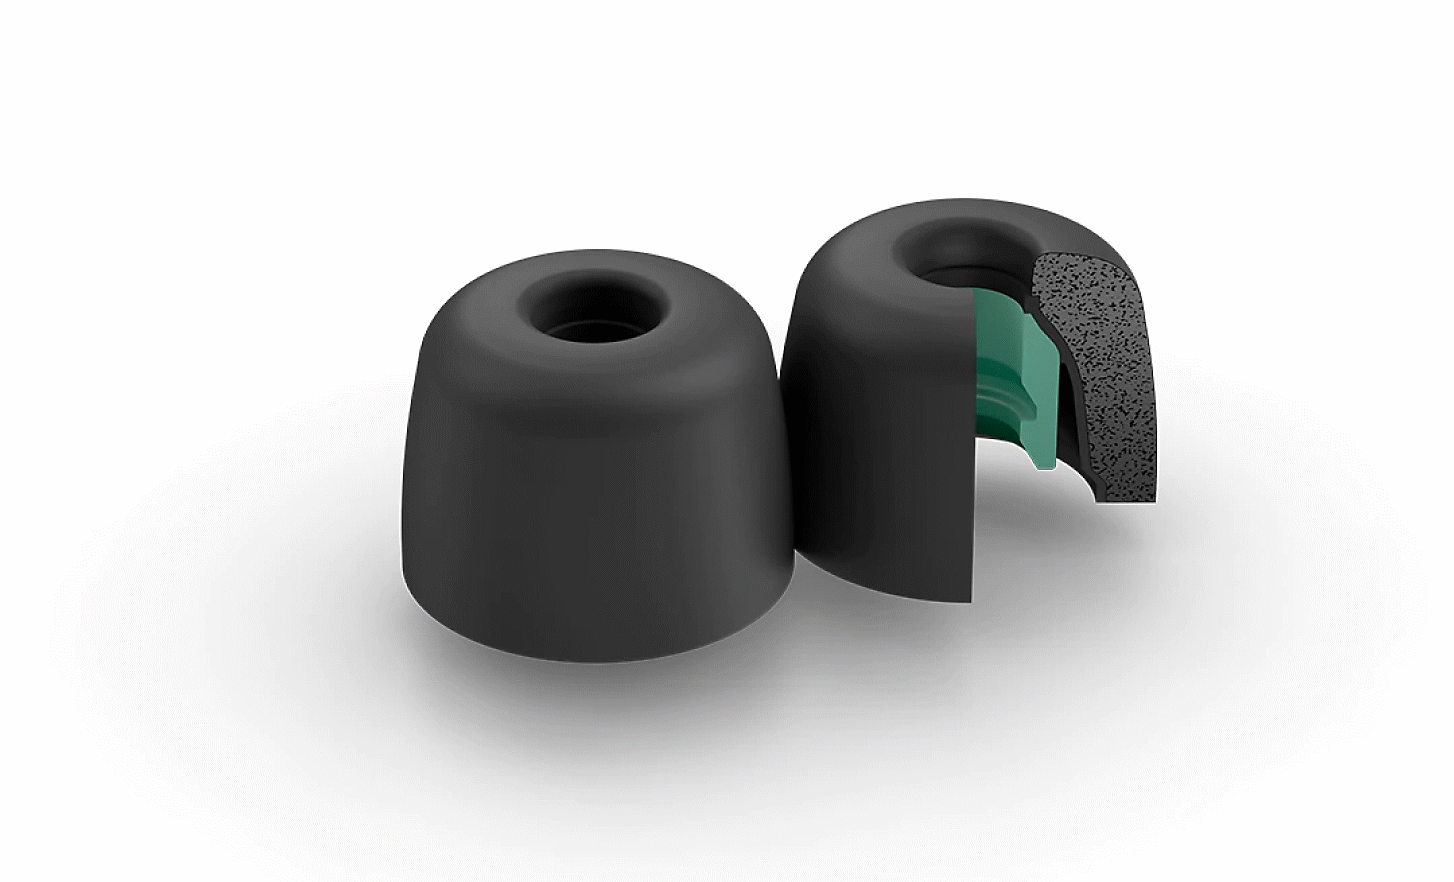 Et par EP-NI1000M-spidser til støjisolerende ørepuder, hvor en af dem er klippet væk for at vise den grønne indvendige del